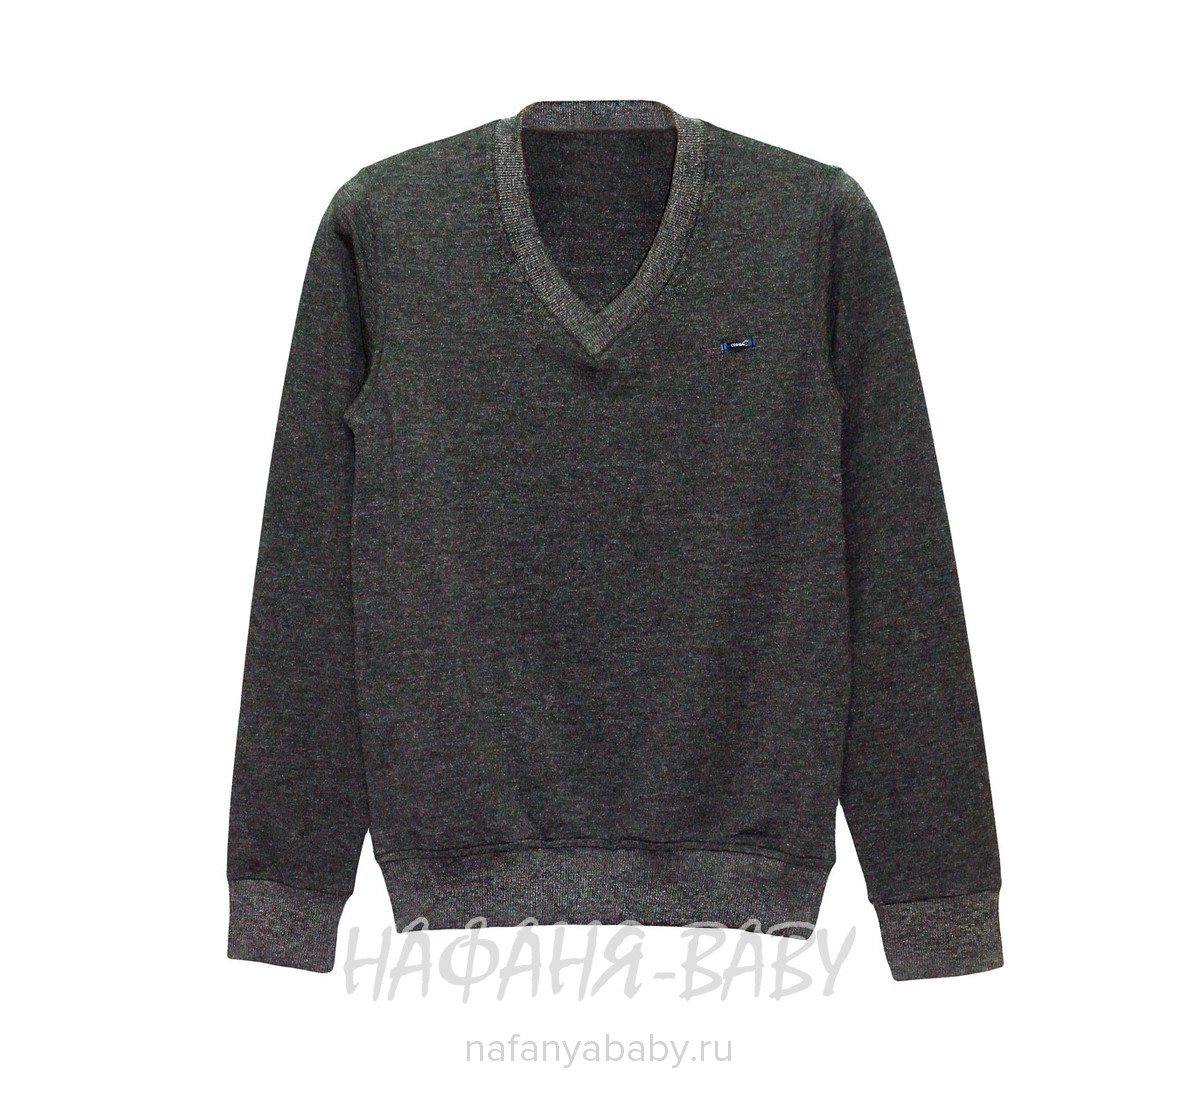 Подростковый пуловер CEGISA, купить в интернет магазине Нафаня. арт: 4605.